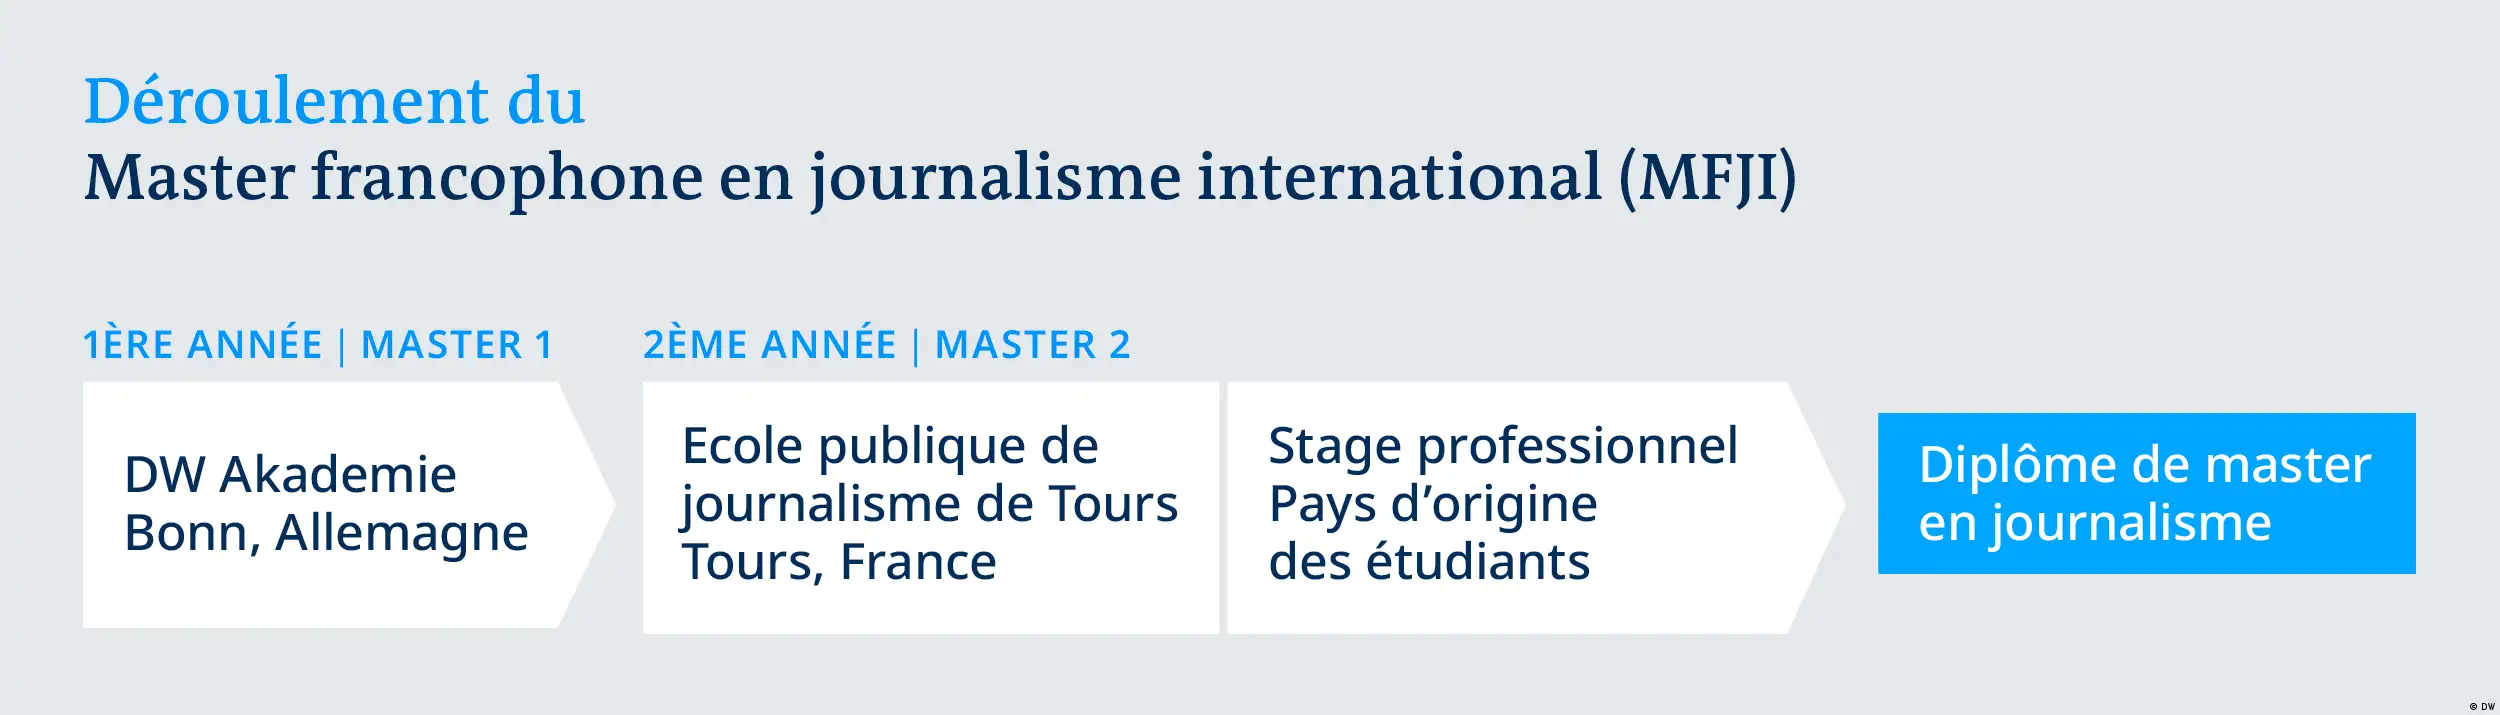  französisch Studiengang „Master francophone en journalisme international MFJI